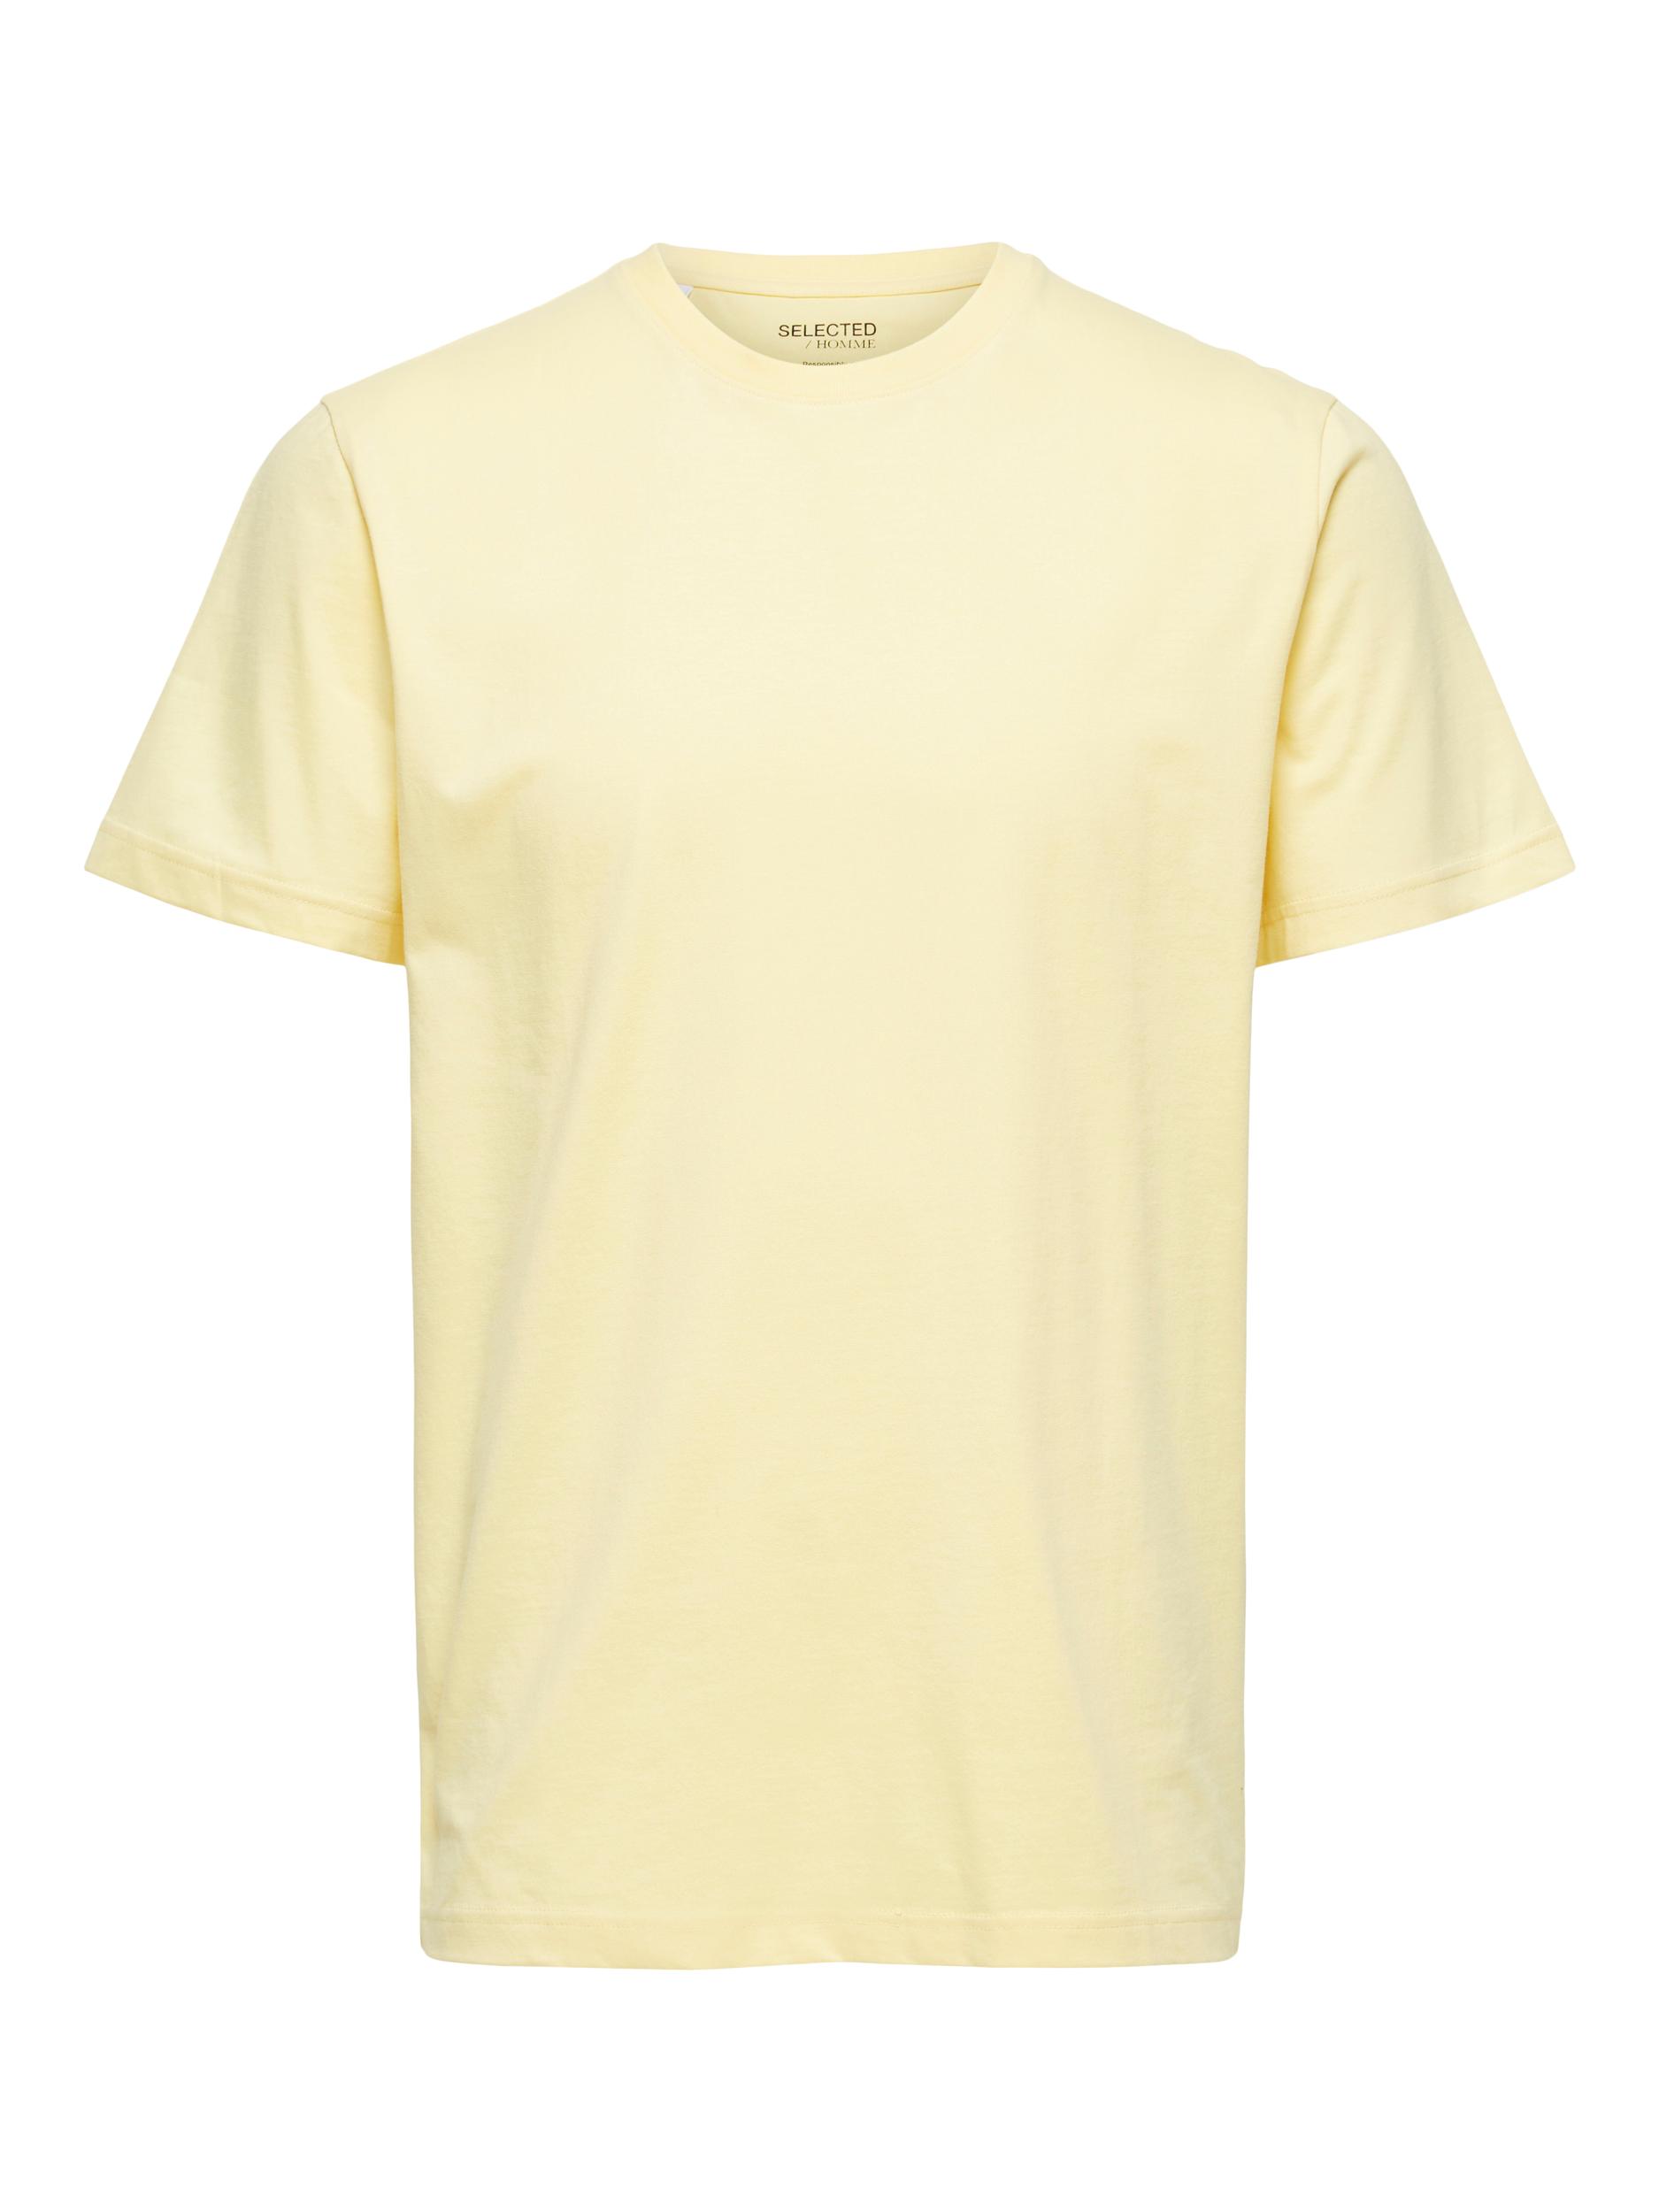  Norman T-shirt, Sunlight, L